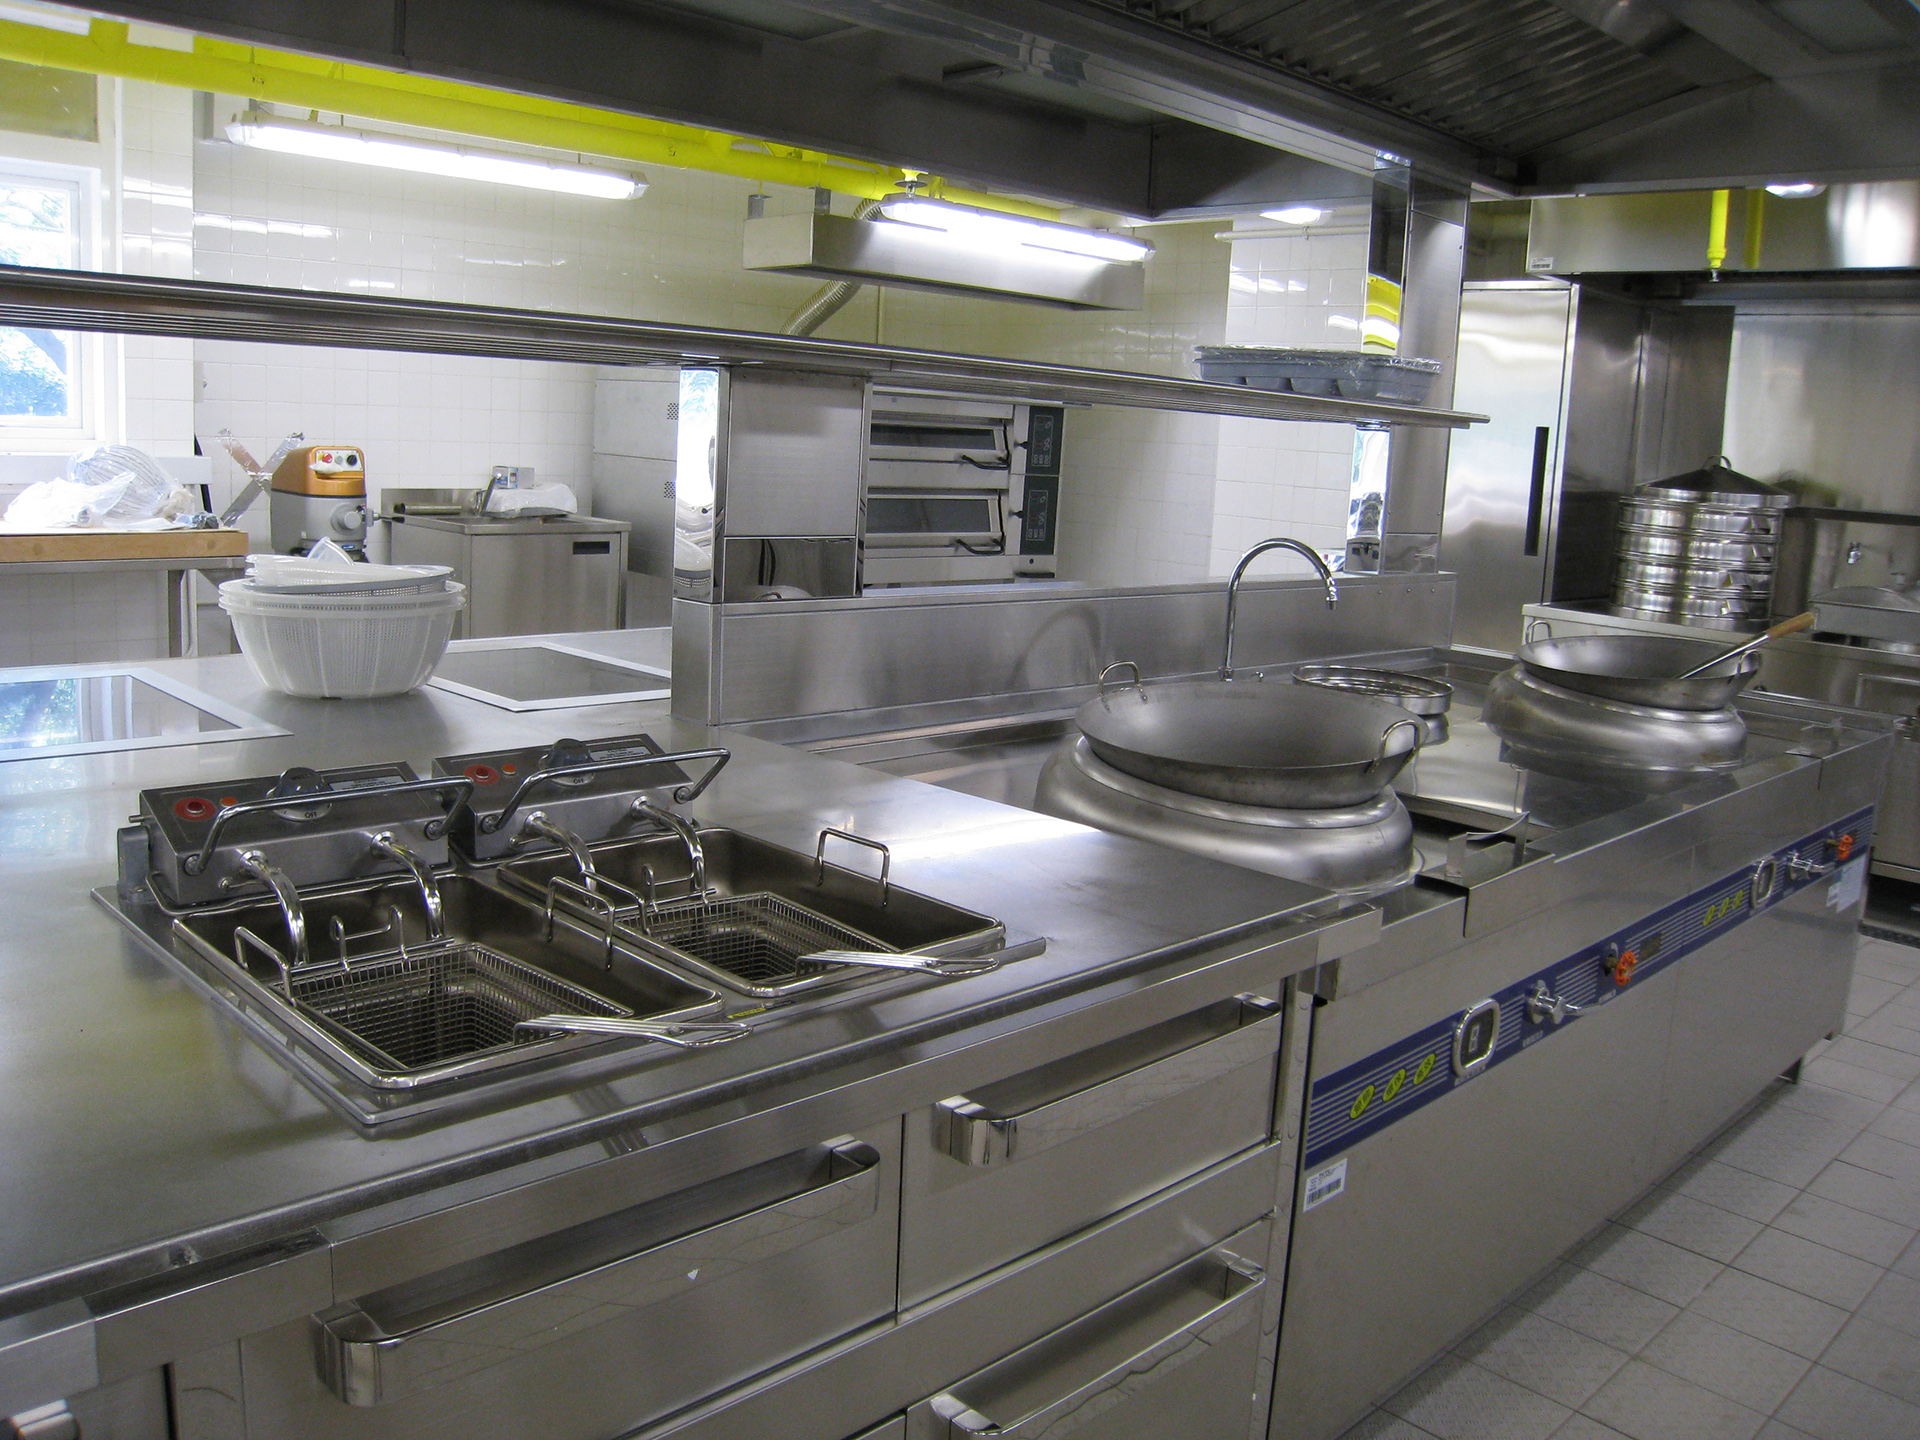 IVDC於屯門新設的訓練廚房達商業用廚房標準